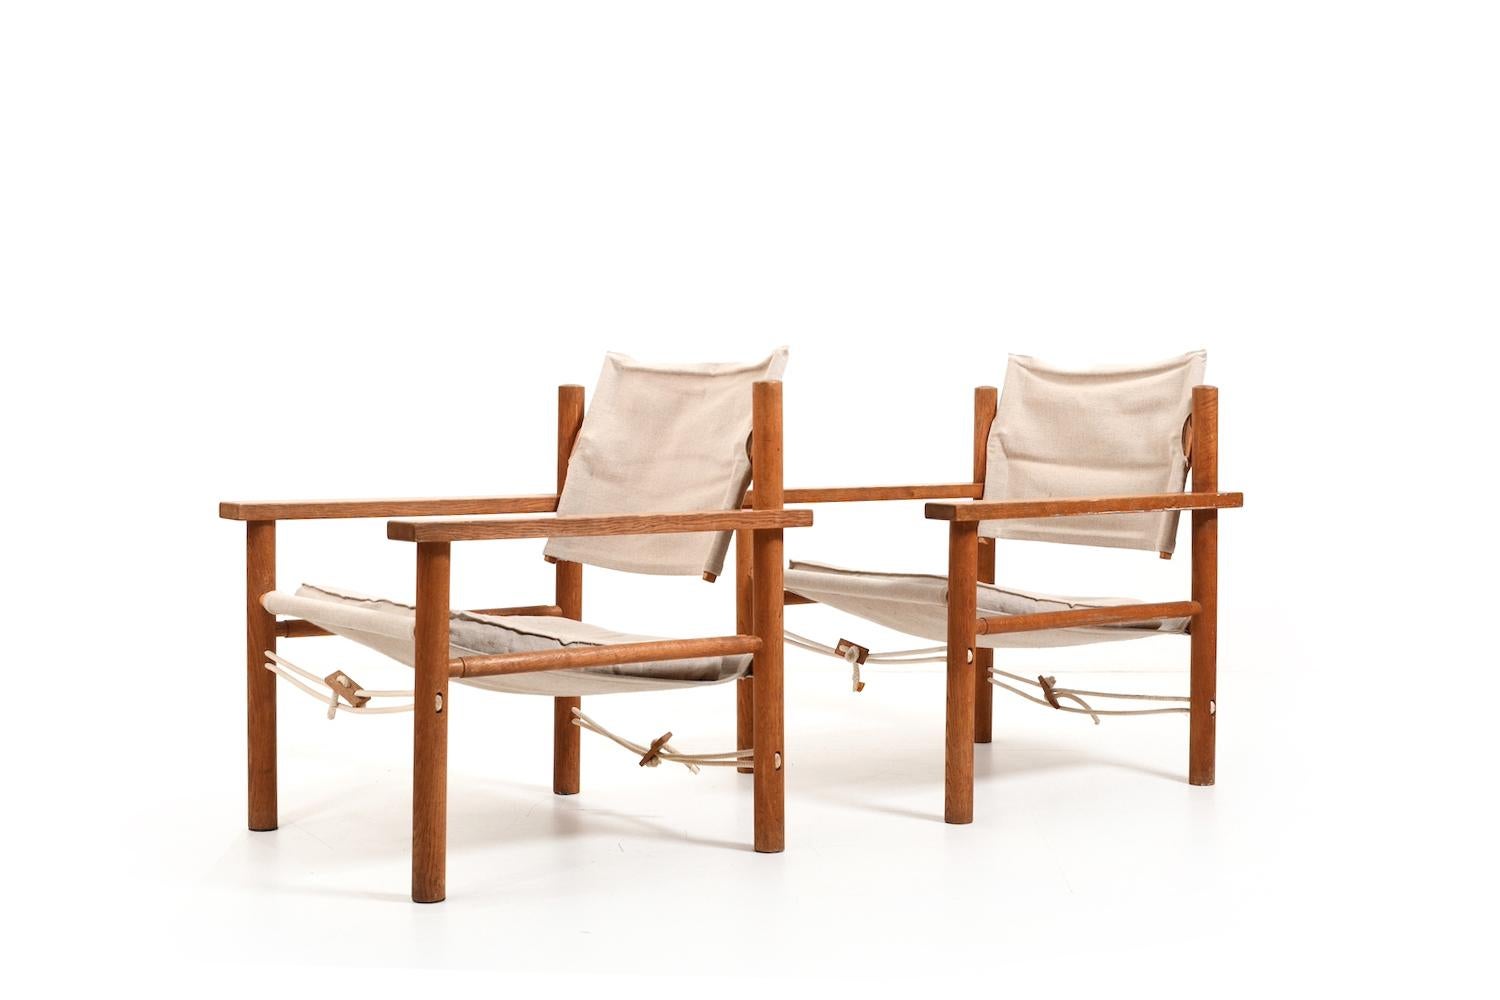 Paire de fauteuils Safari en chêne massif  et avec des coussins et du tissu en lin. designer et producteur danois inconnu, début des années 1960. Très bonne qualité.